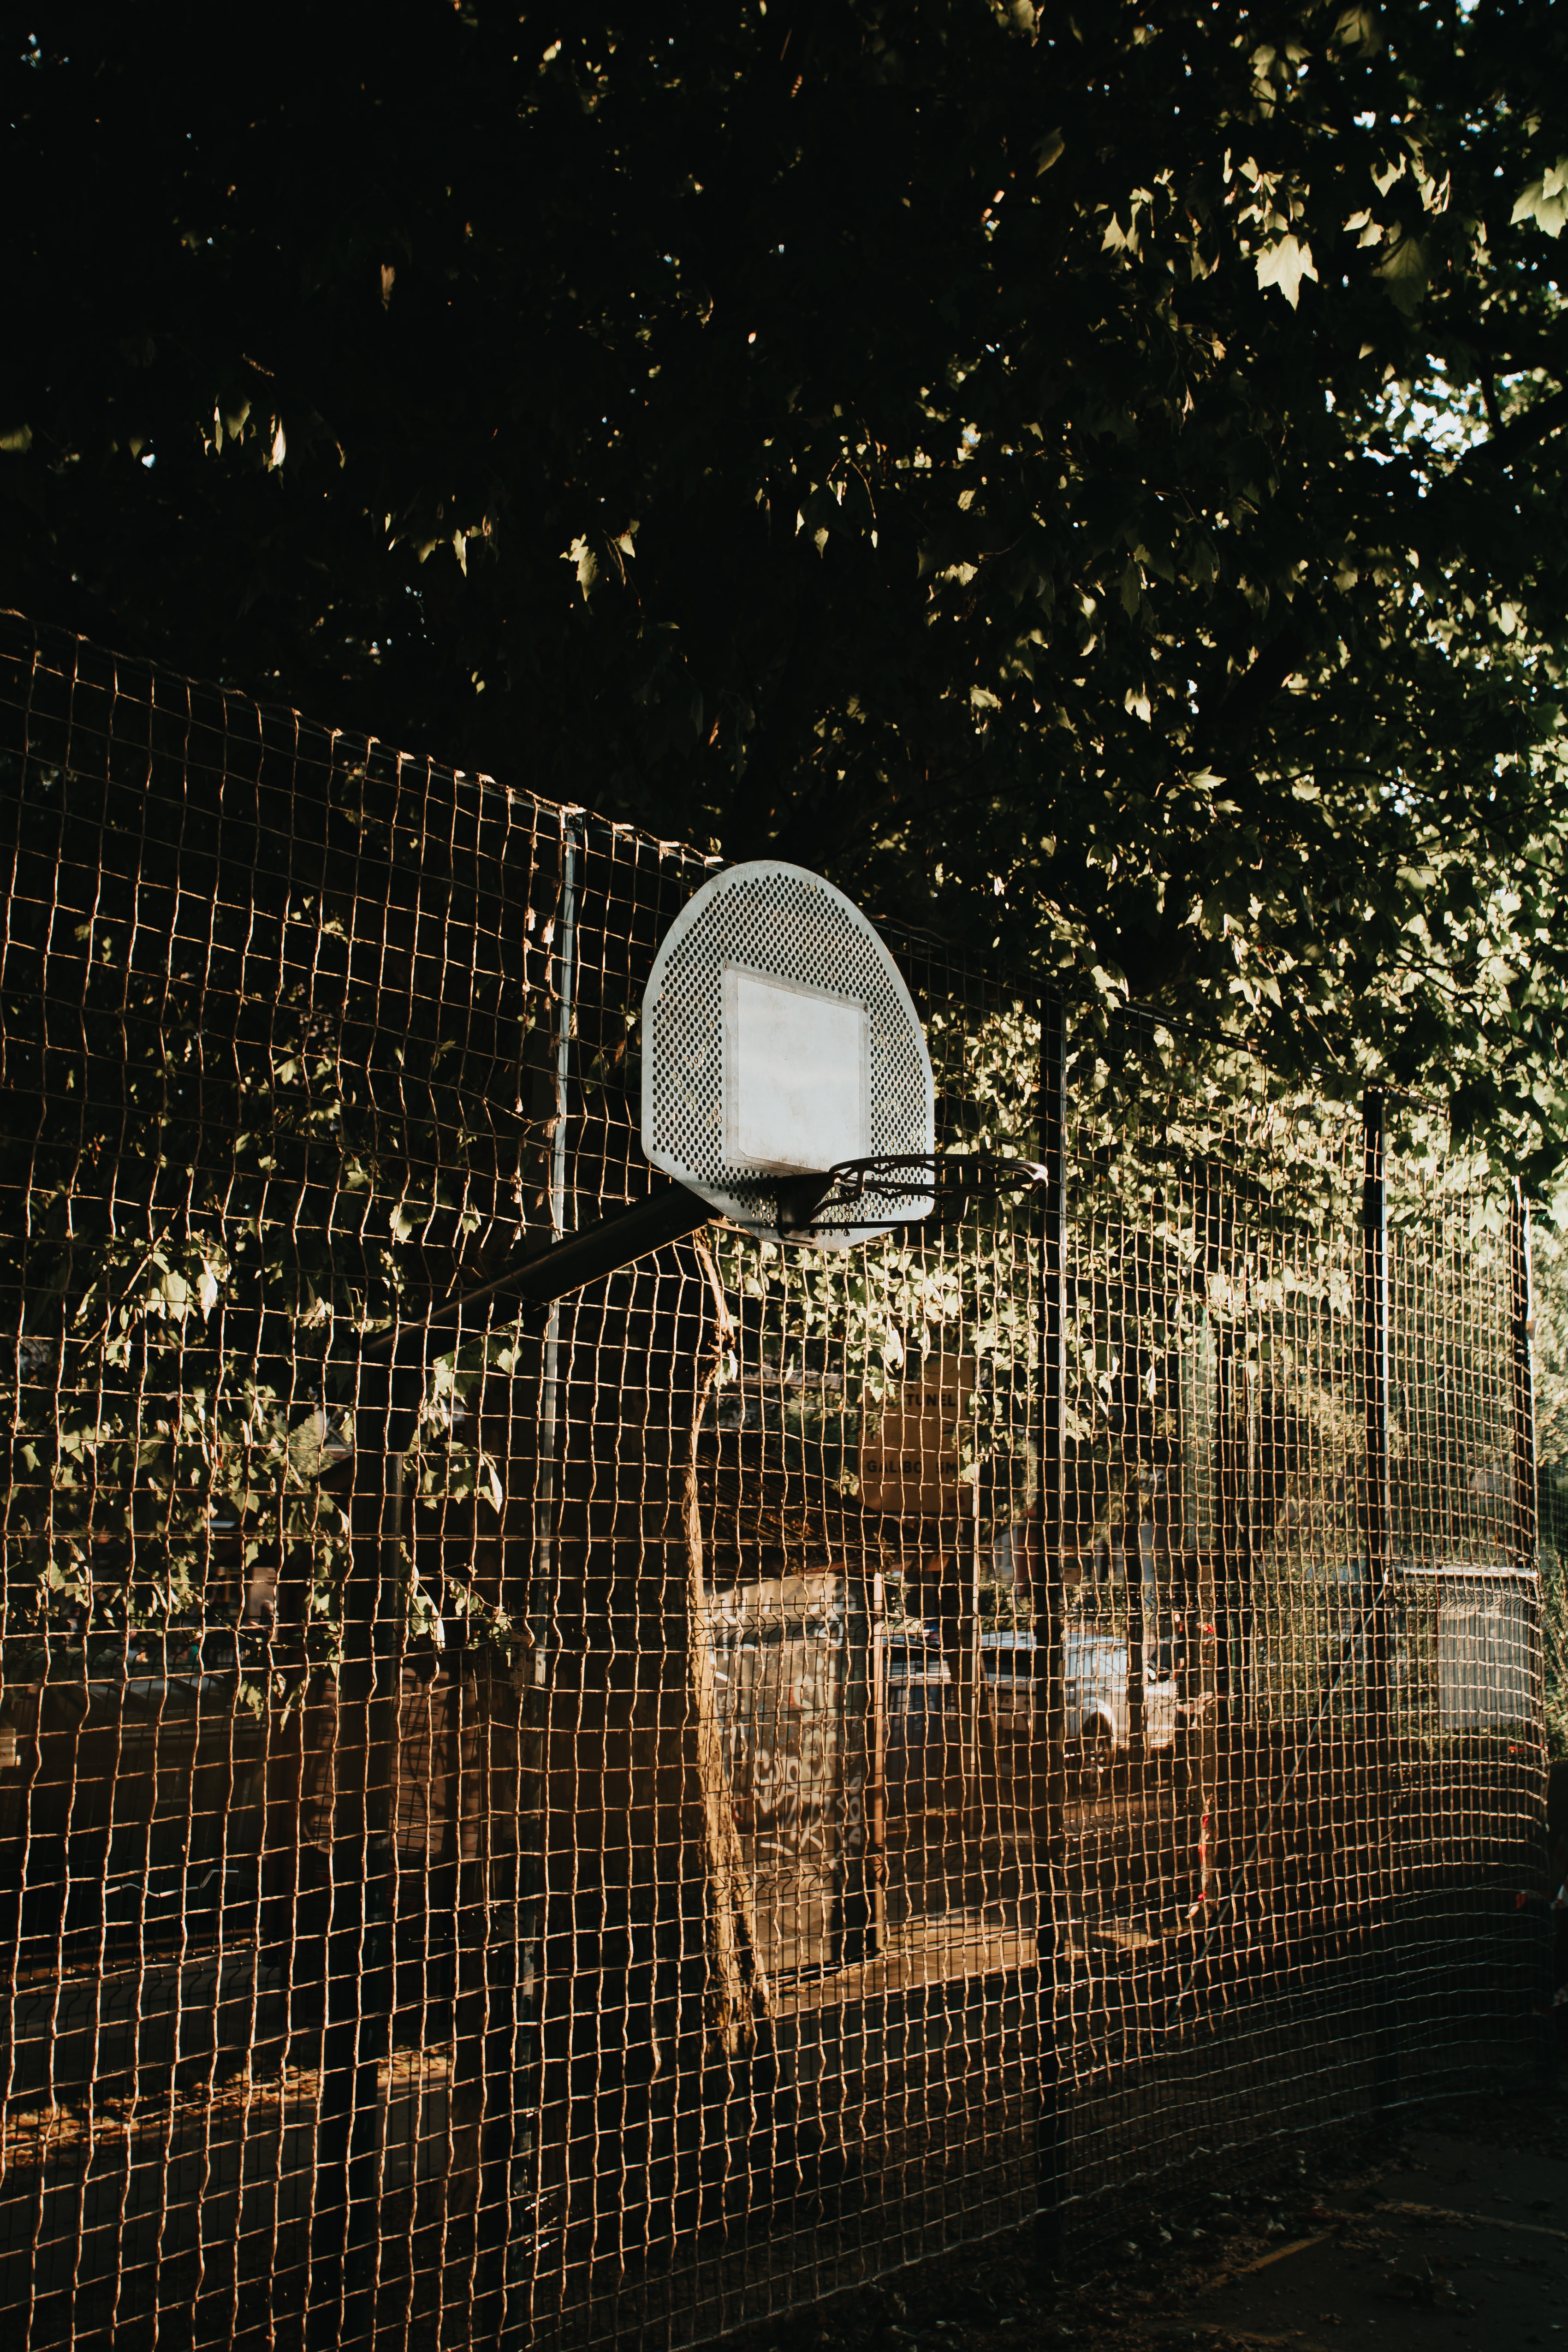 trees, basketball, miscellanea, miscellaneous, grid, basketball backboard, basketball shield